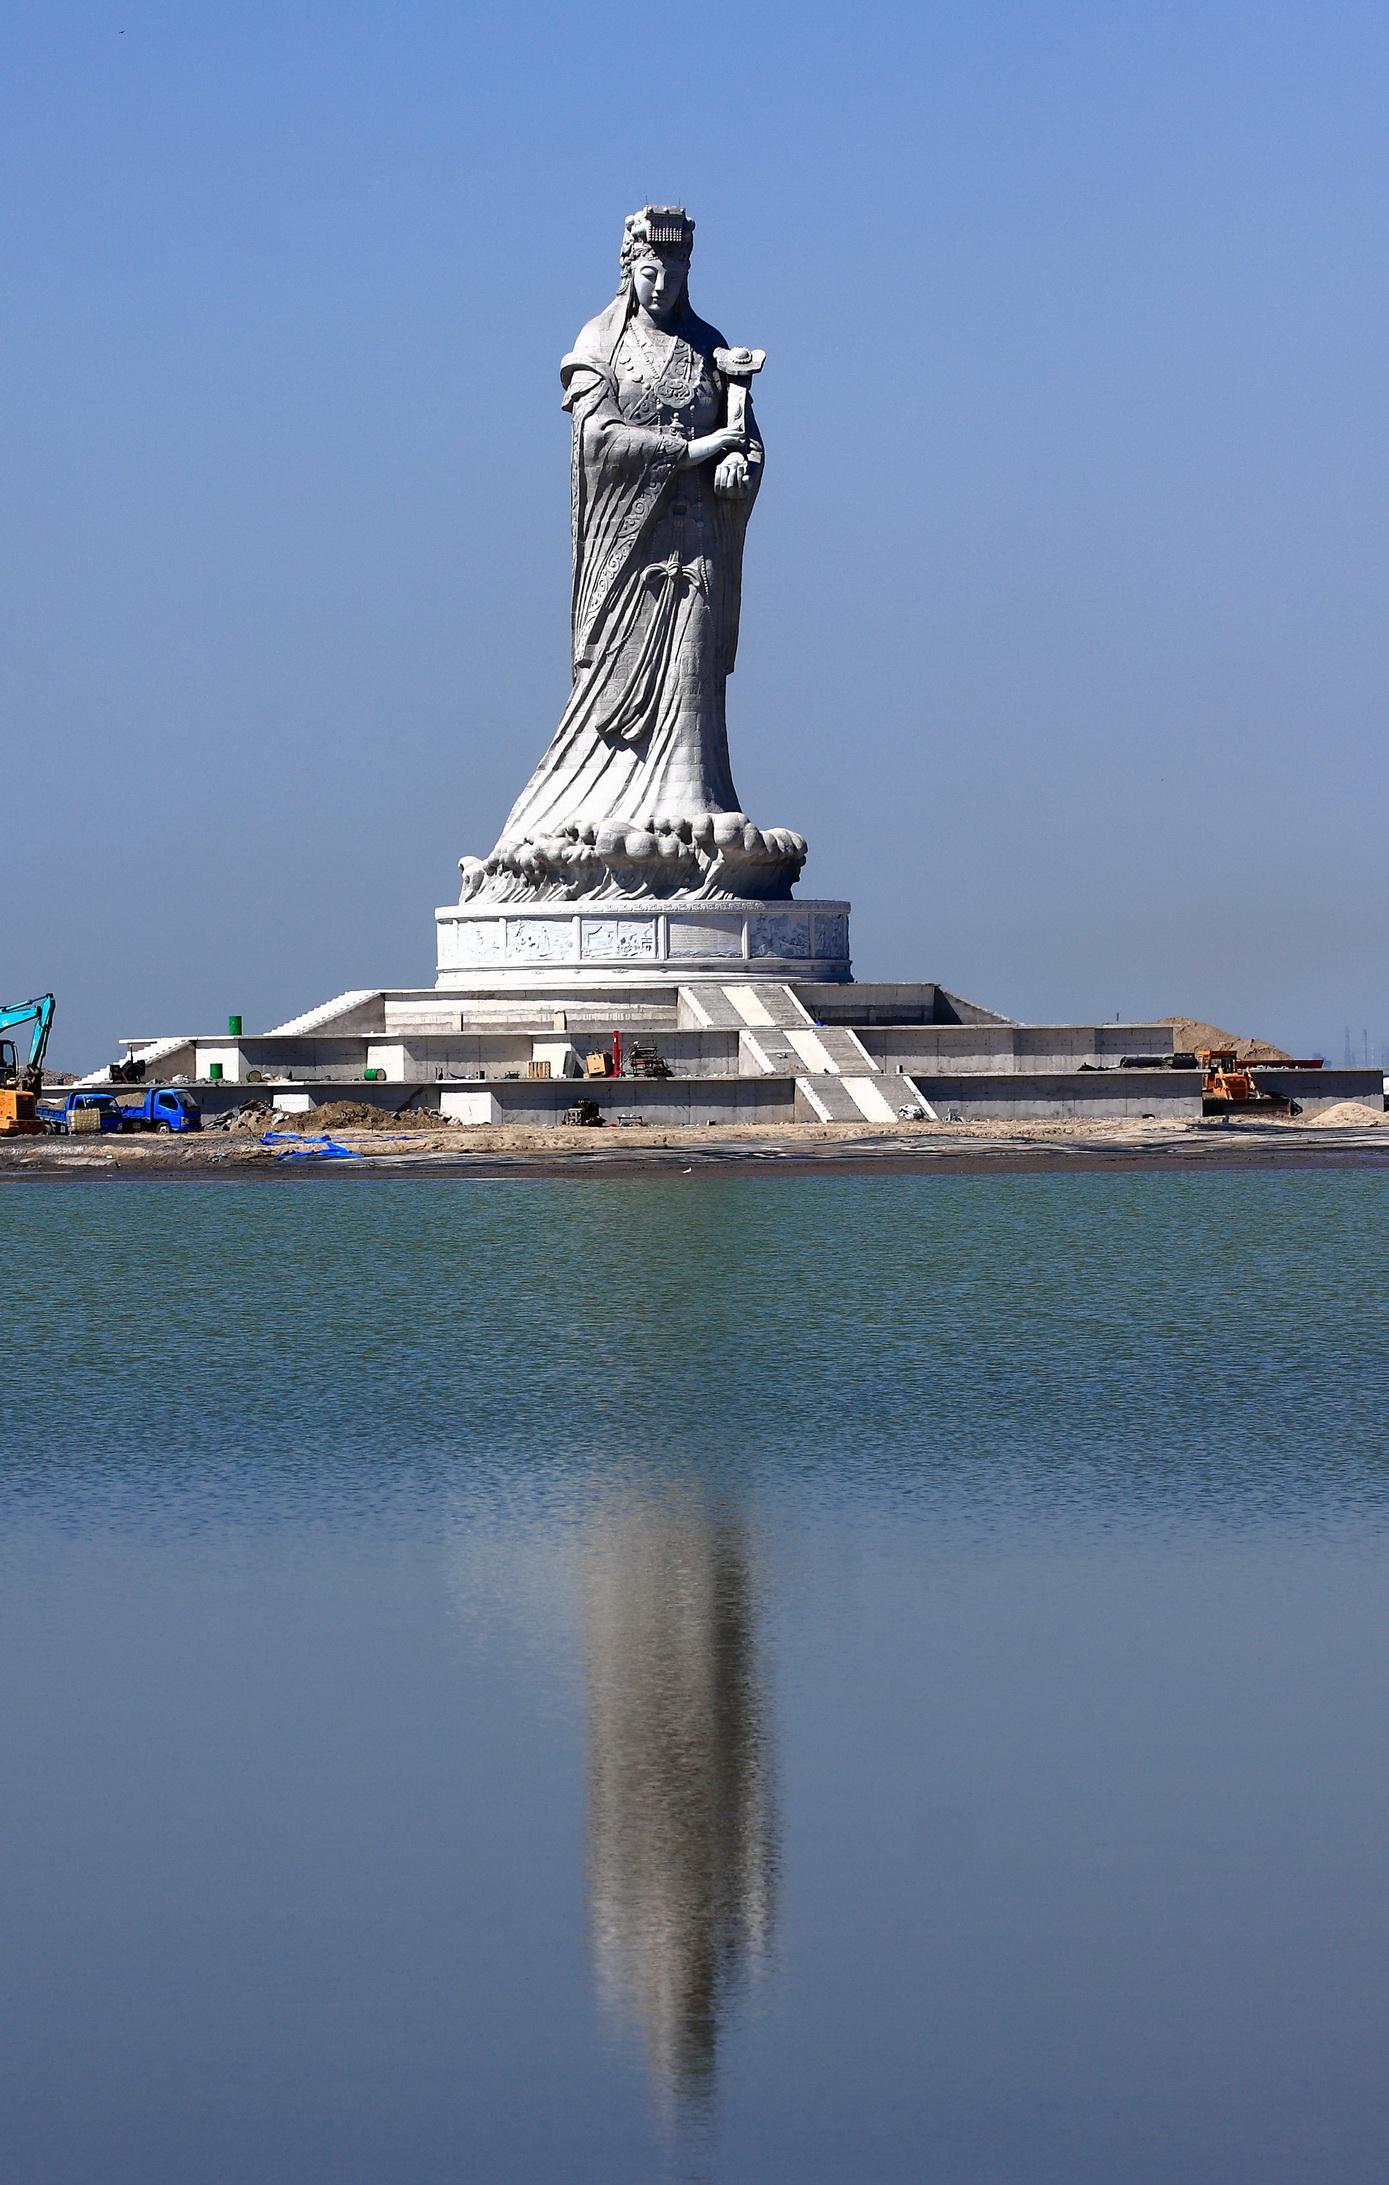 世界最高的妈祖圣像,高42.3米,堪称当地雕像象征,就在天津